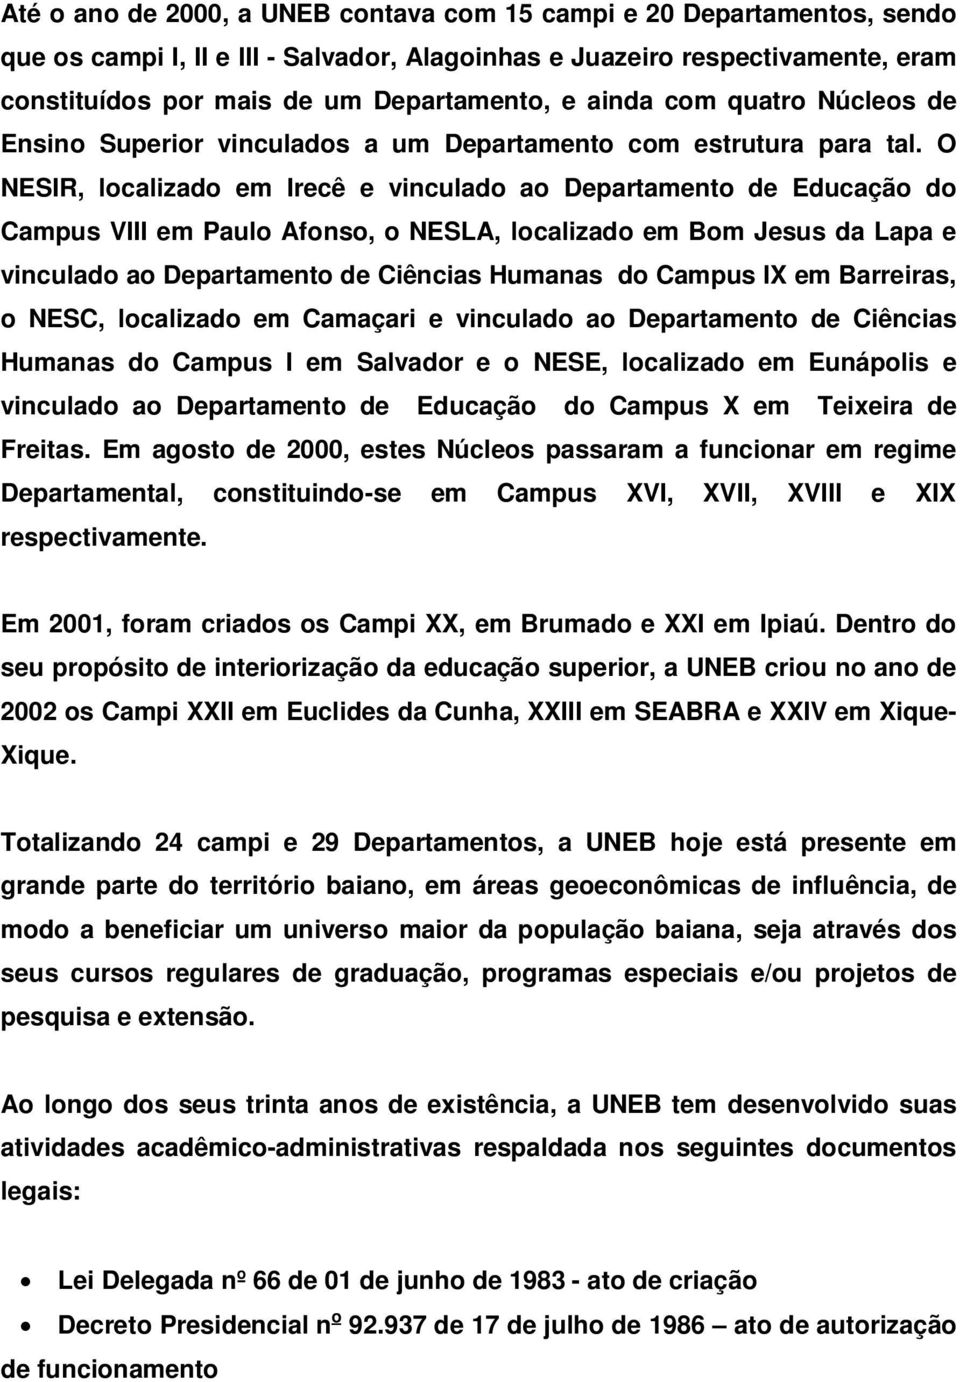 O NESIR, localizado em Irecê e vinculado ao Departamento de Educação do Campus VIII em Paulo Afonso, o NESLA, localizado em Bom Jesus da Lapa e vinculado ao do Campus IX em Barreiras, o NESC,